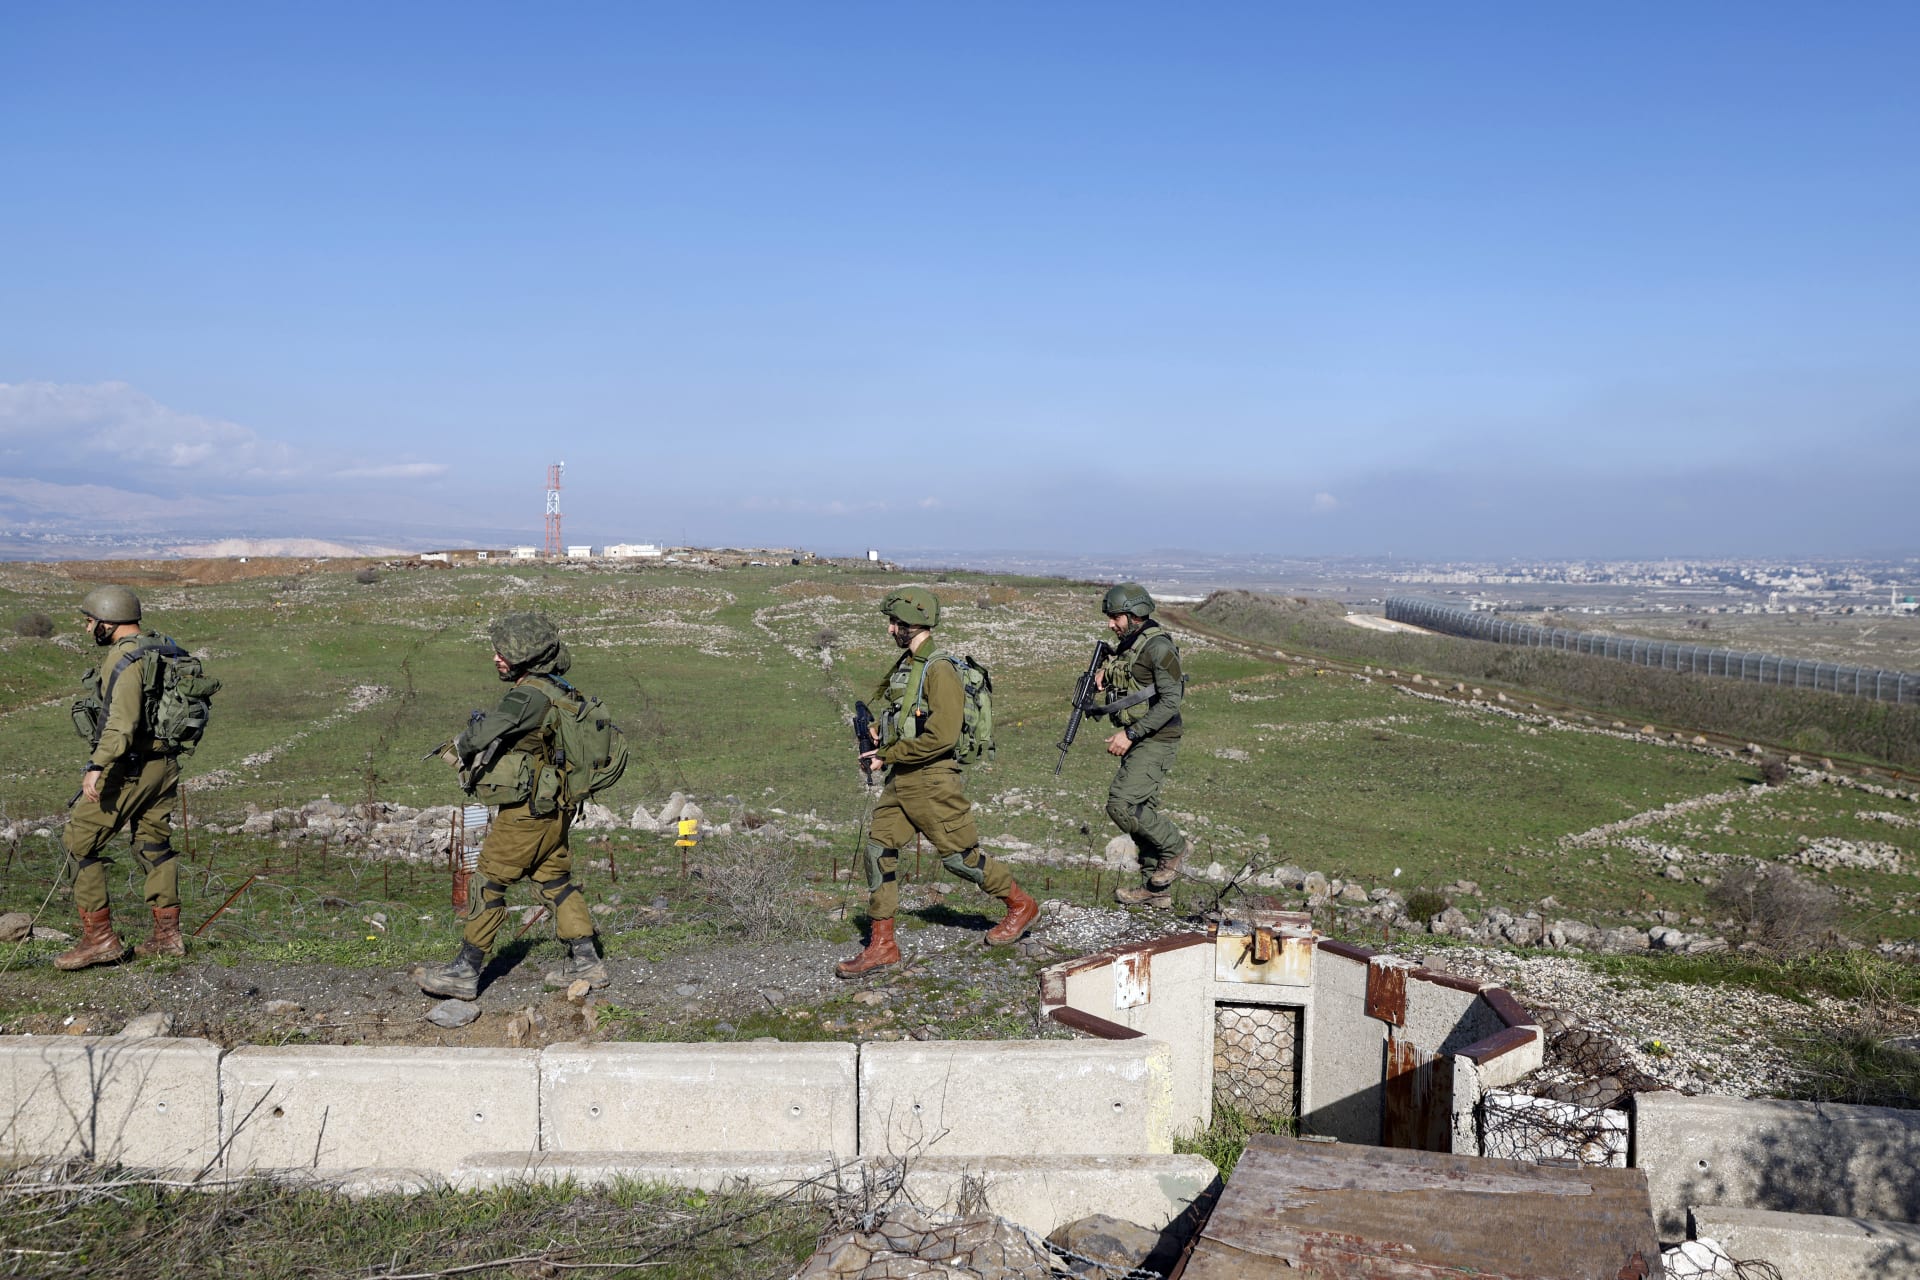 الجيش الإسرائيلي يعلن قصف أهداف للقوات المسلحة السورية وحزب الله